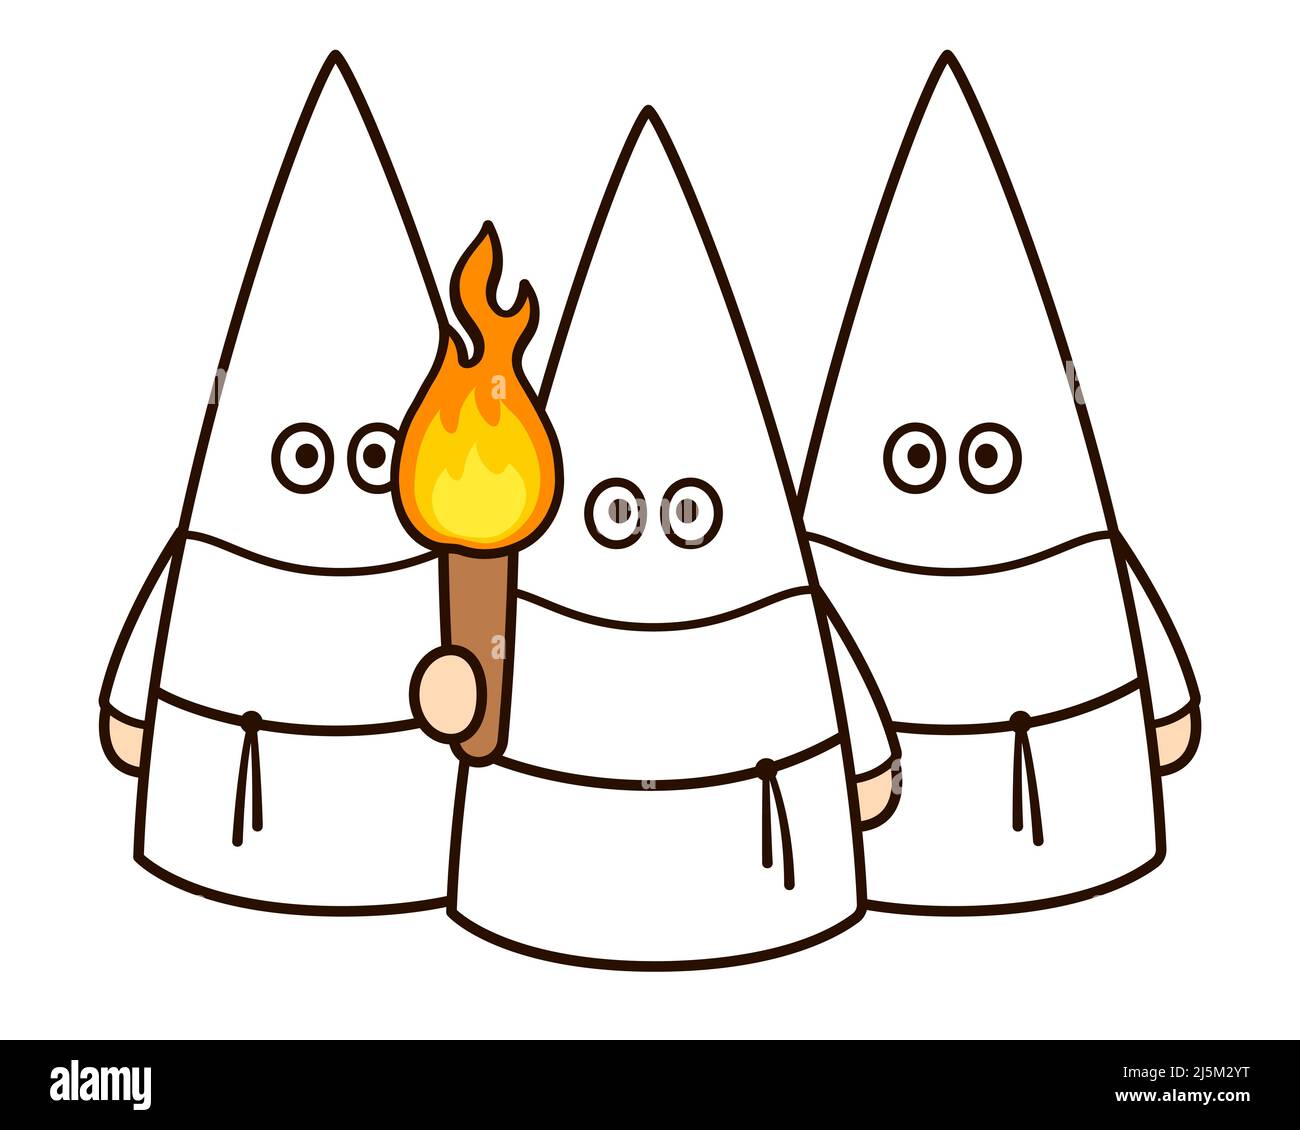 Una multitud de miembros Ku Klux Klan en capuchas blancas con antorcha. Caricatura de historia estadounidense, extremistas de supremacía blanca. Ilustración de imagen de clip vectorial. Ilustración del Vector